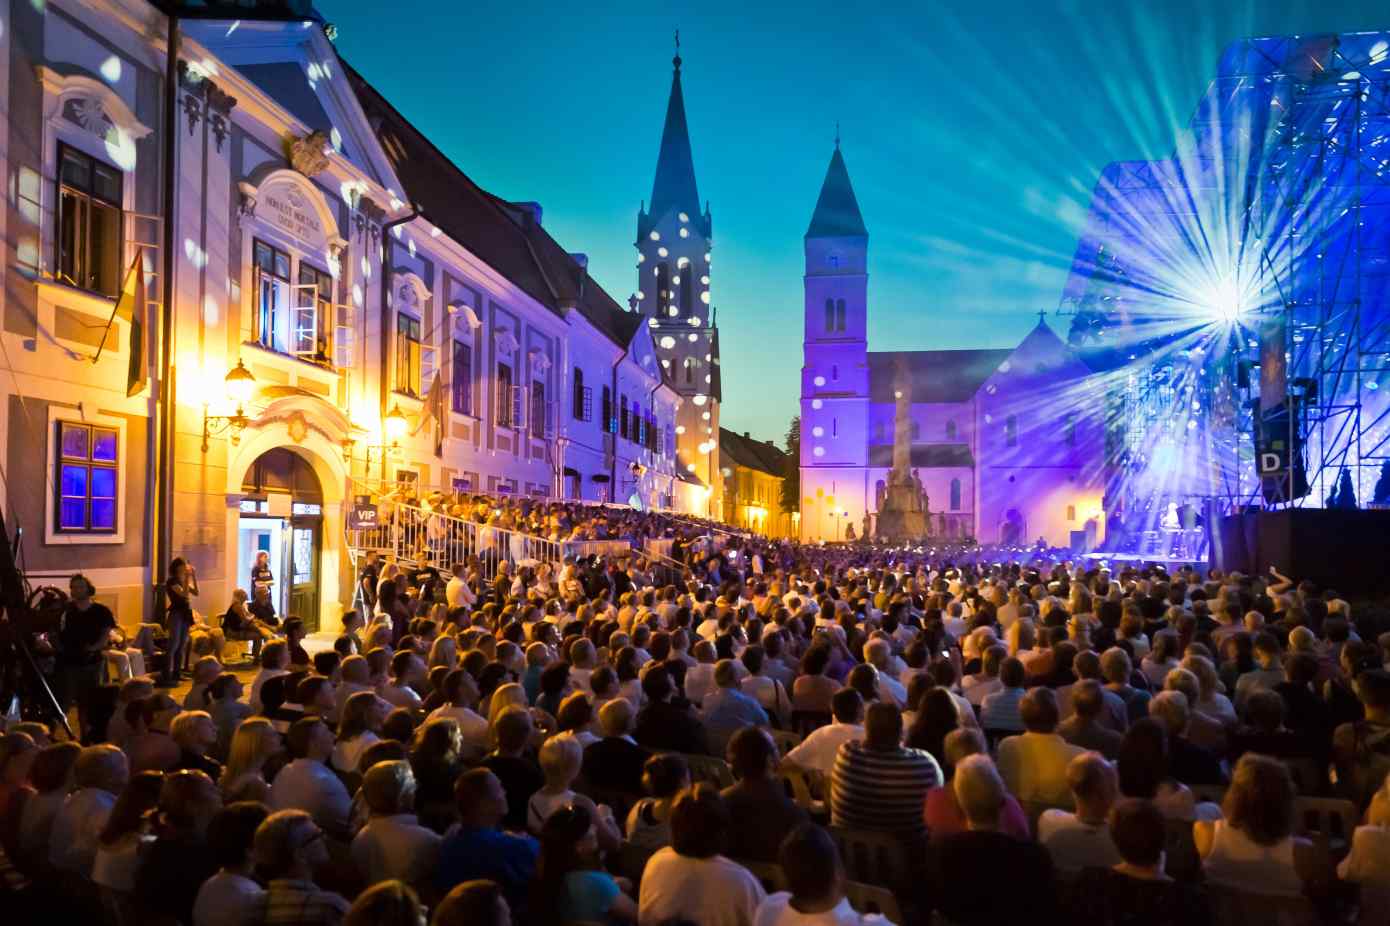 VeszprémFest 2018, 11-15 July